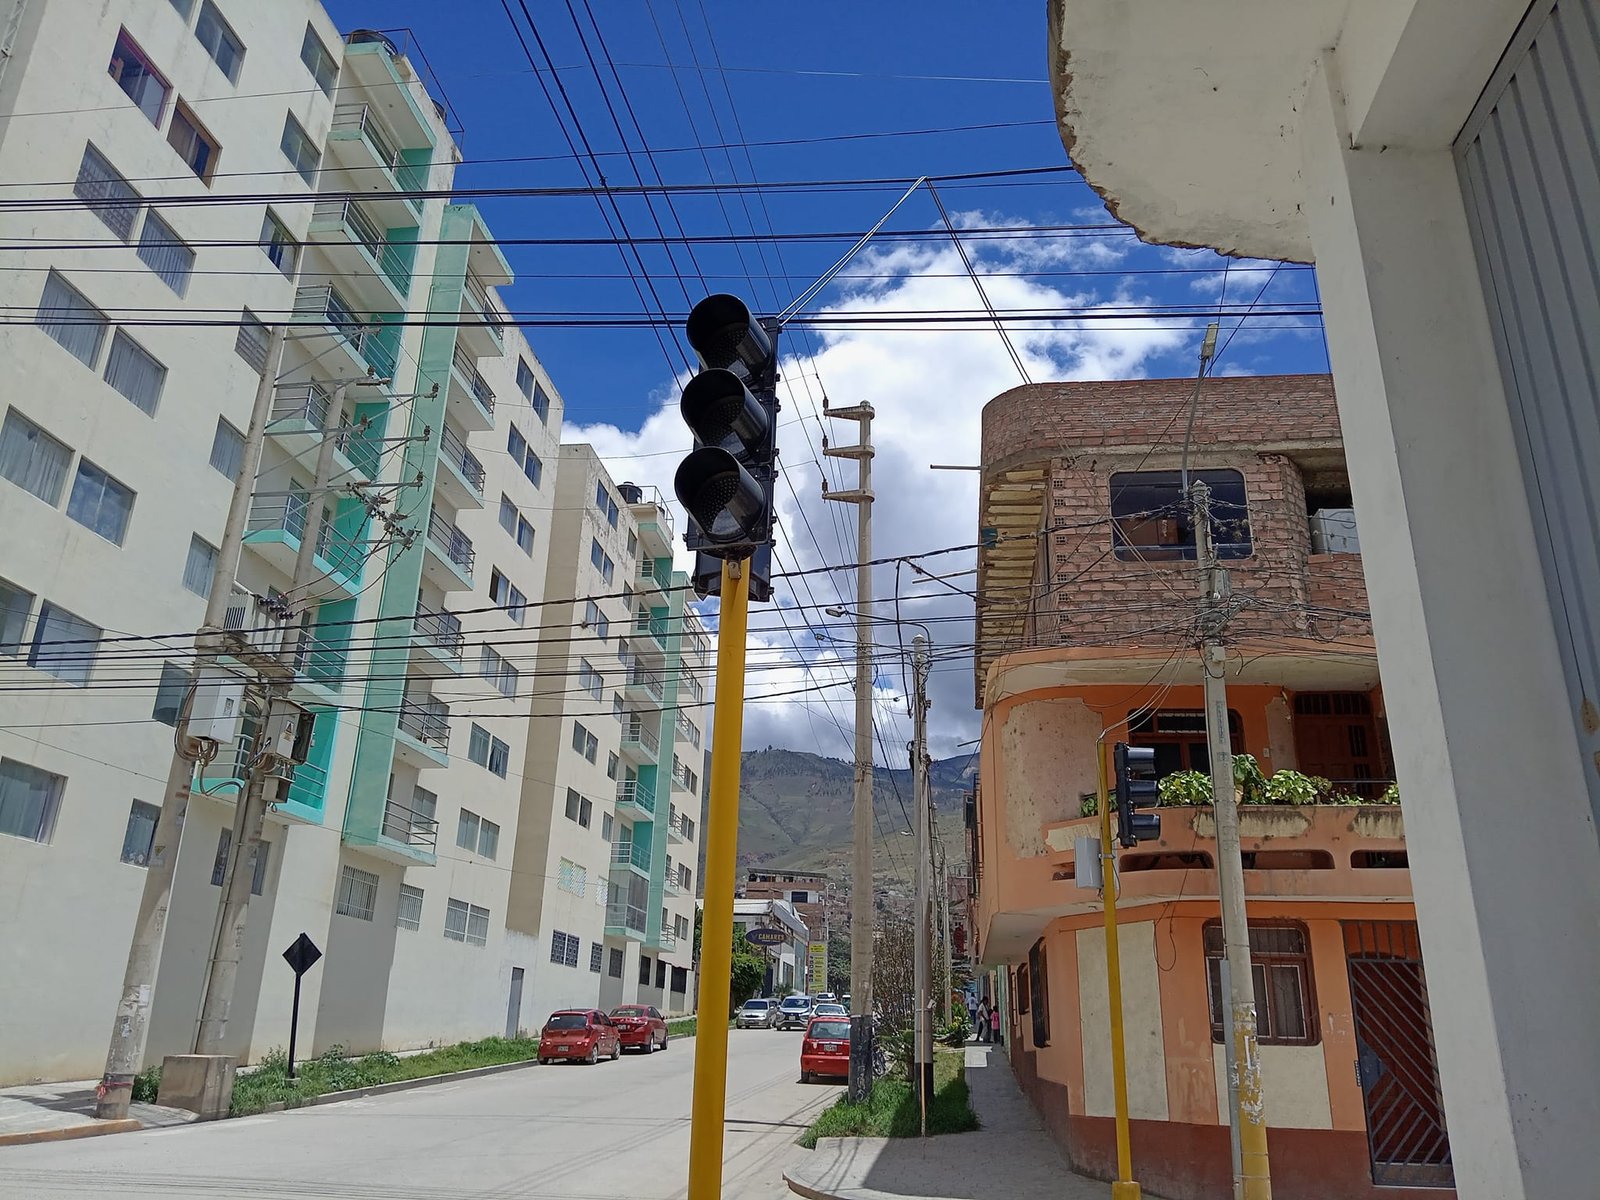 Semáforos desfasados en la ciudad de Huánuco funcionan mal en 43 intersecciones